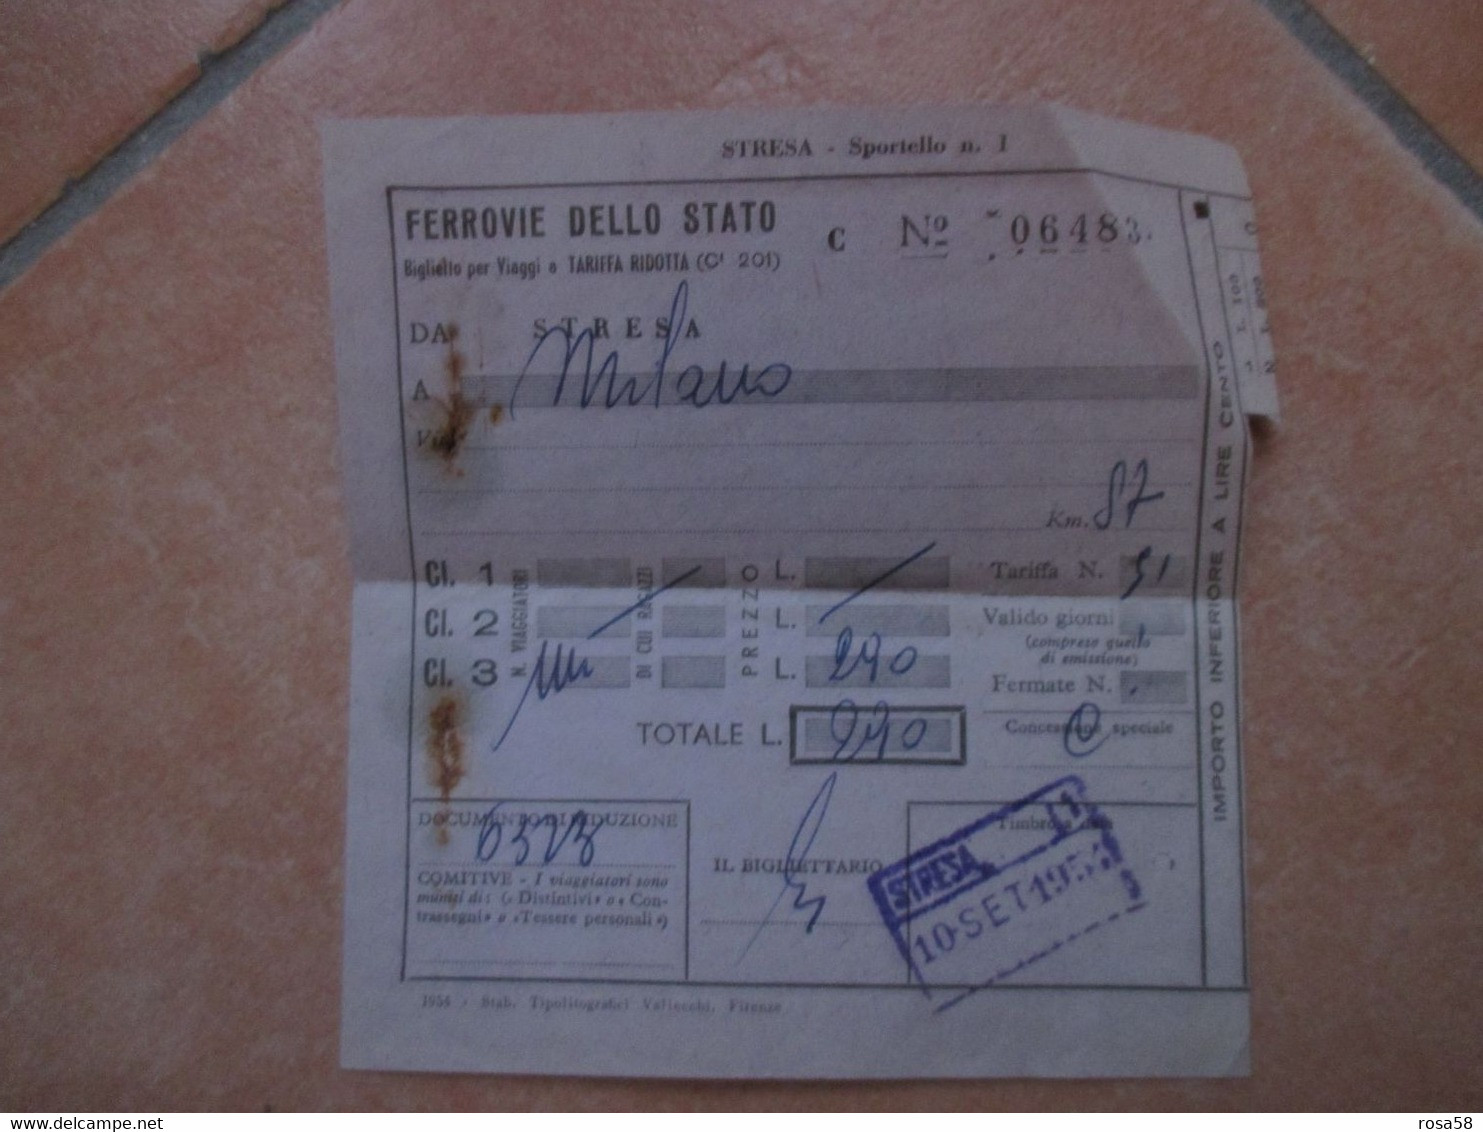 FERROVIE DELLO STATO Da STRESA A Milano 10 Sett 1954 - Europa